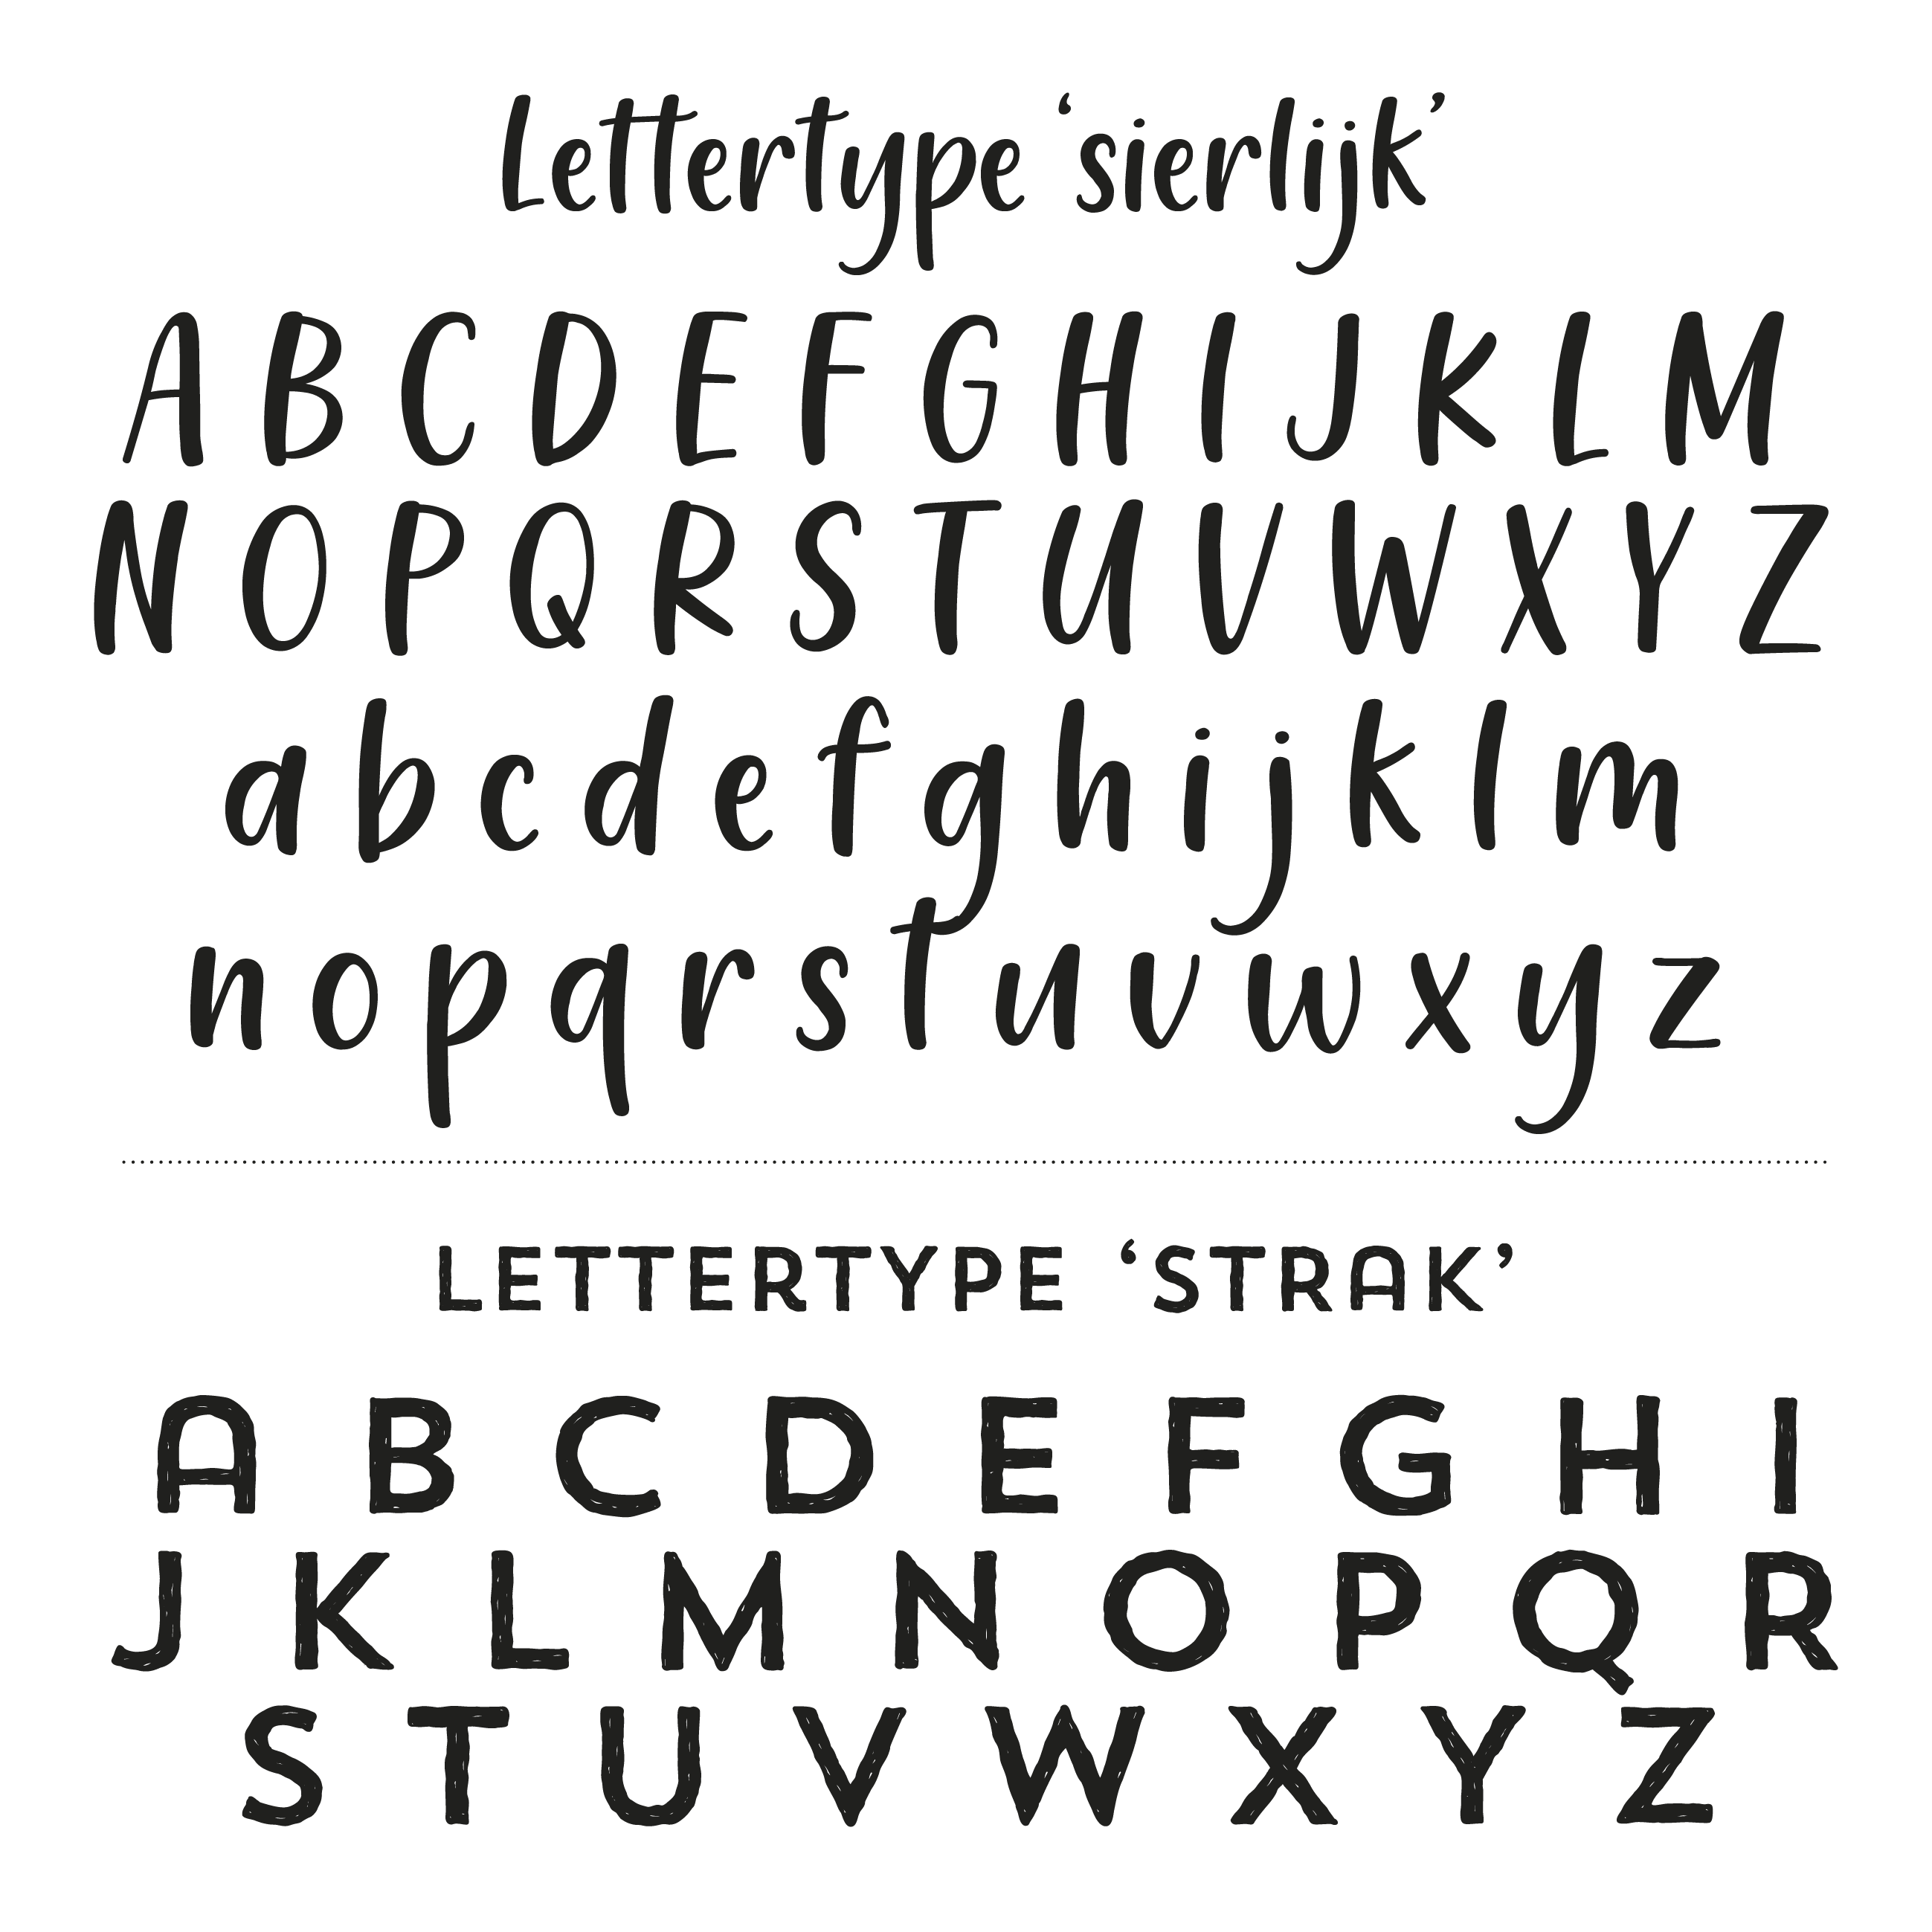 Lettertype